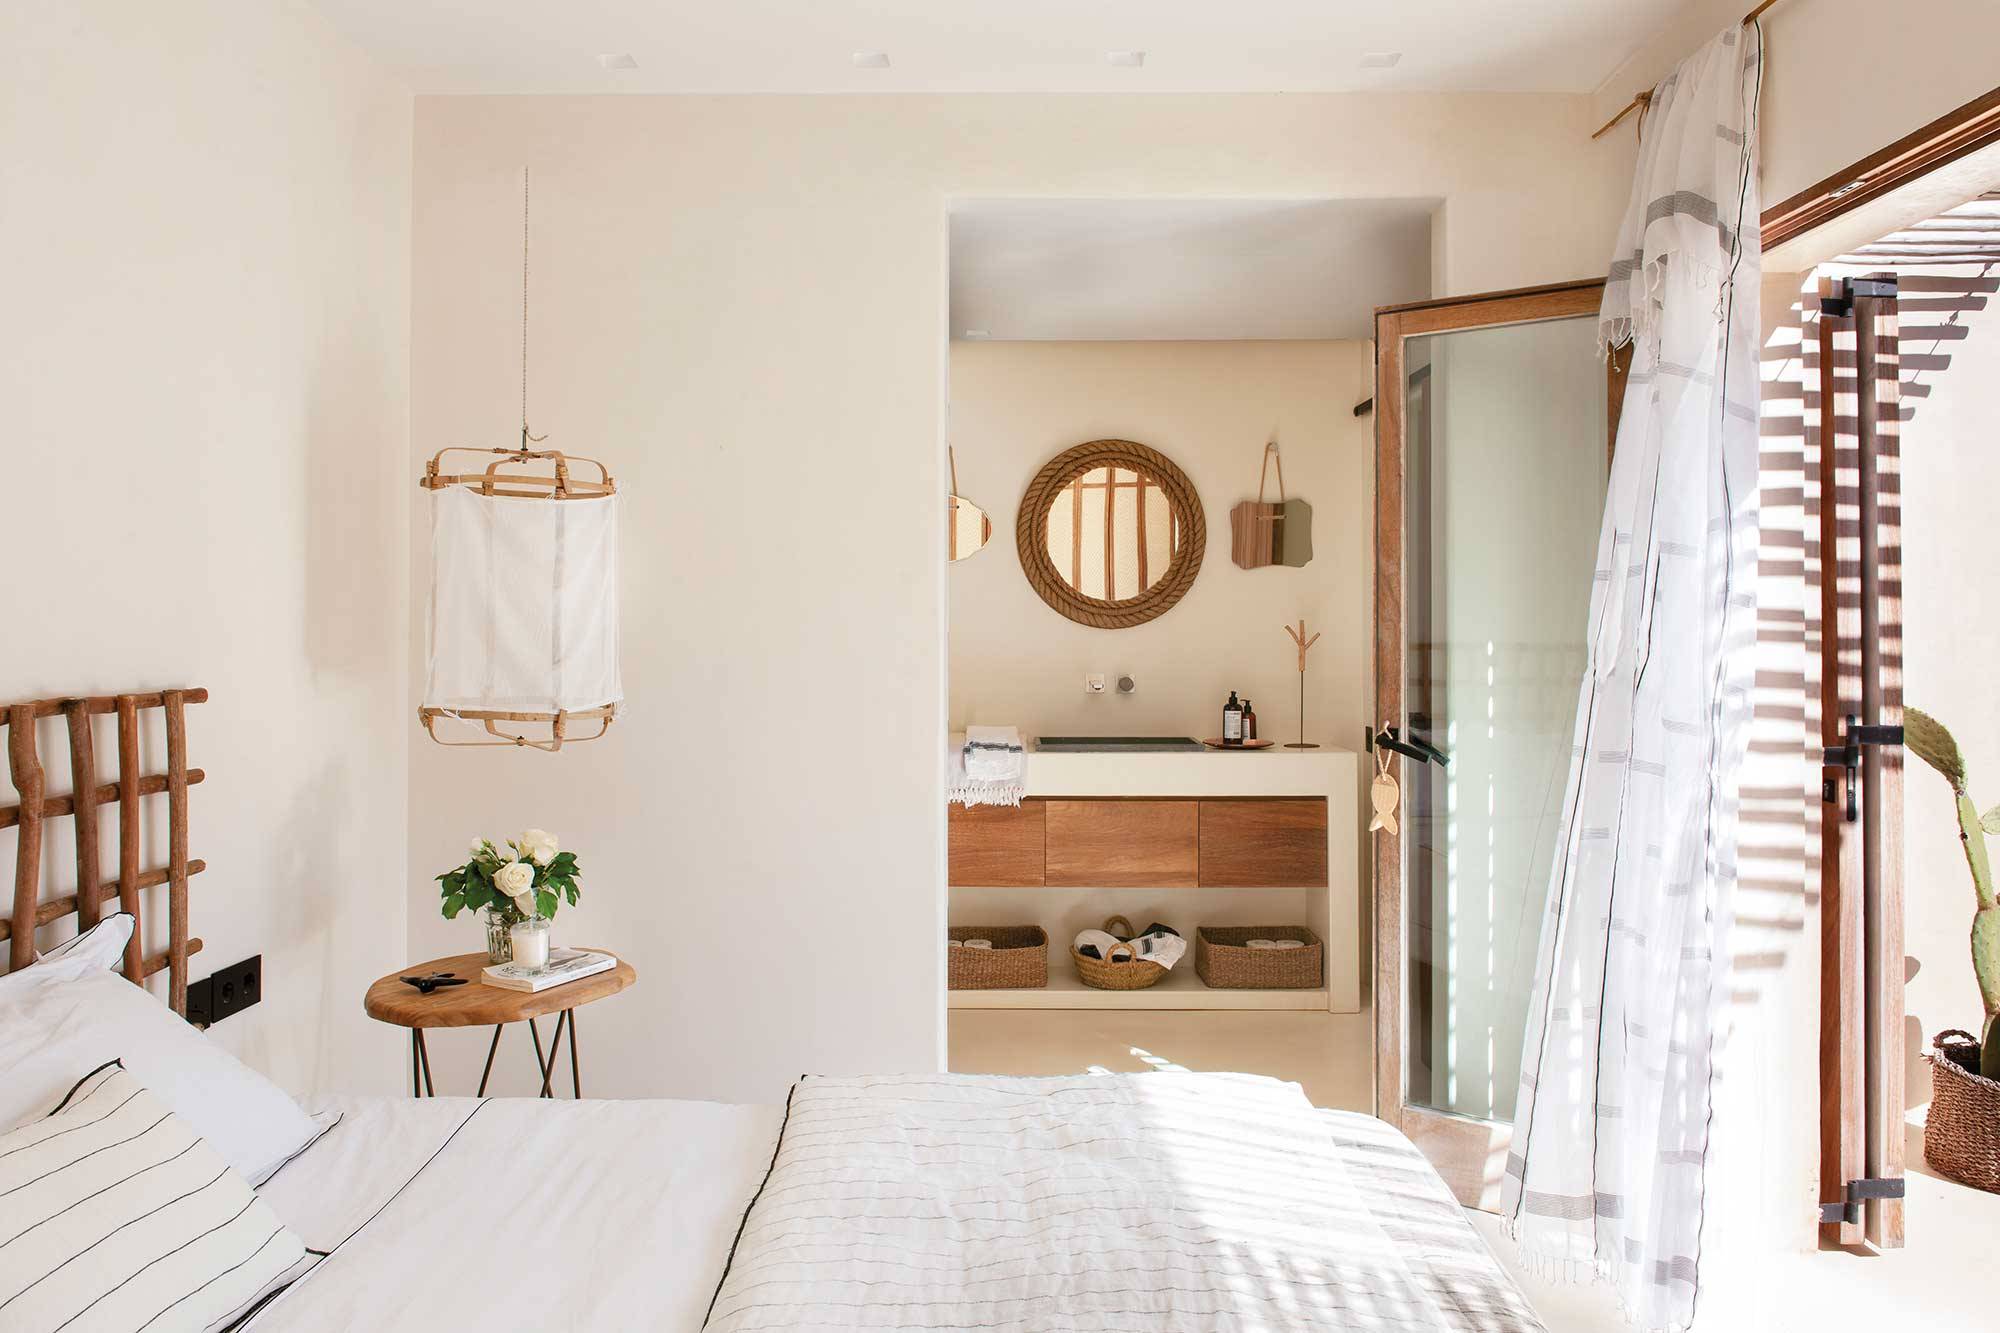 Dormitorio de primavera en blanco y madera con baño integrado.